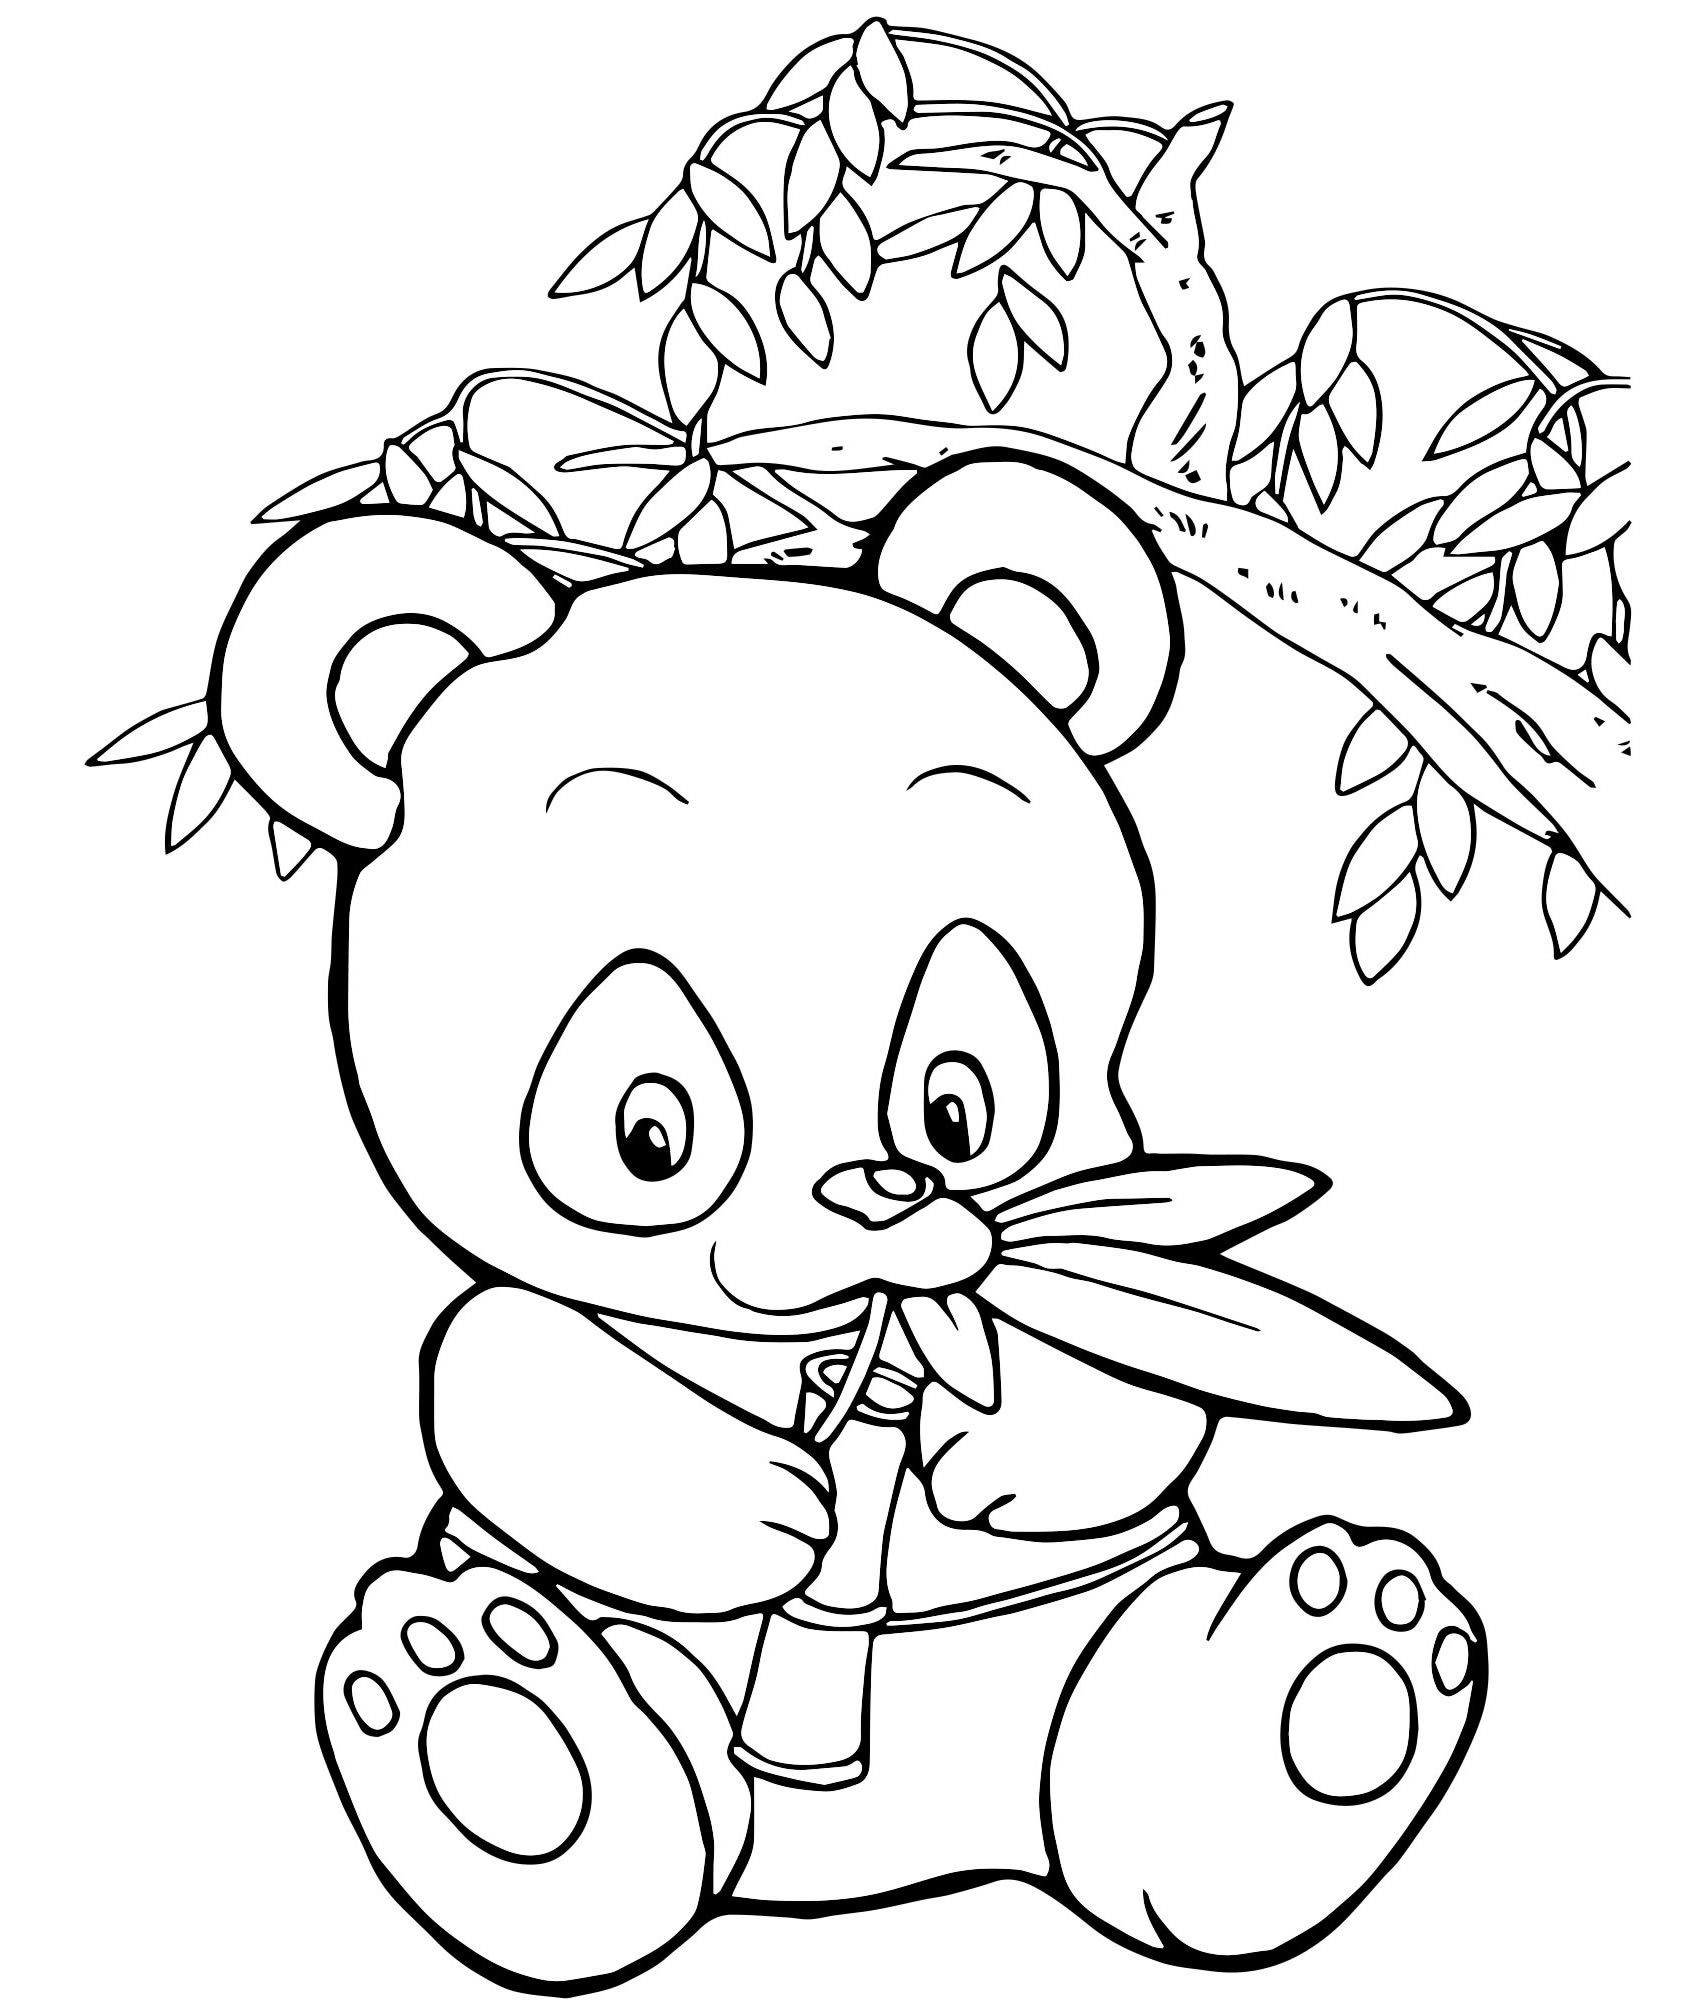 Милая панда раскраска для детей